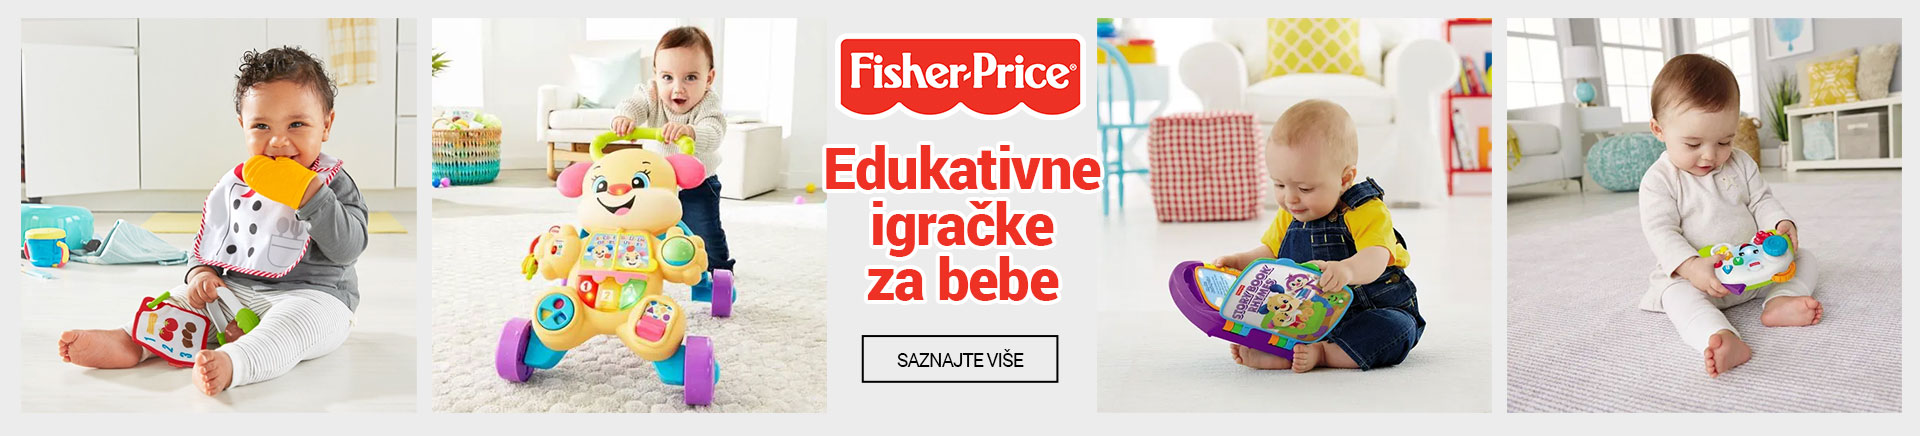 BA Fisher Price Edukativne igracke za bebe DESKTOP 1200 X 436.jpg